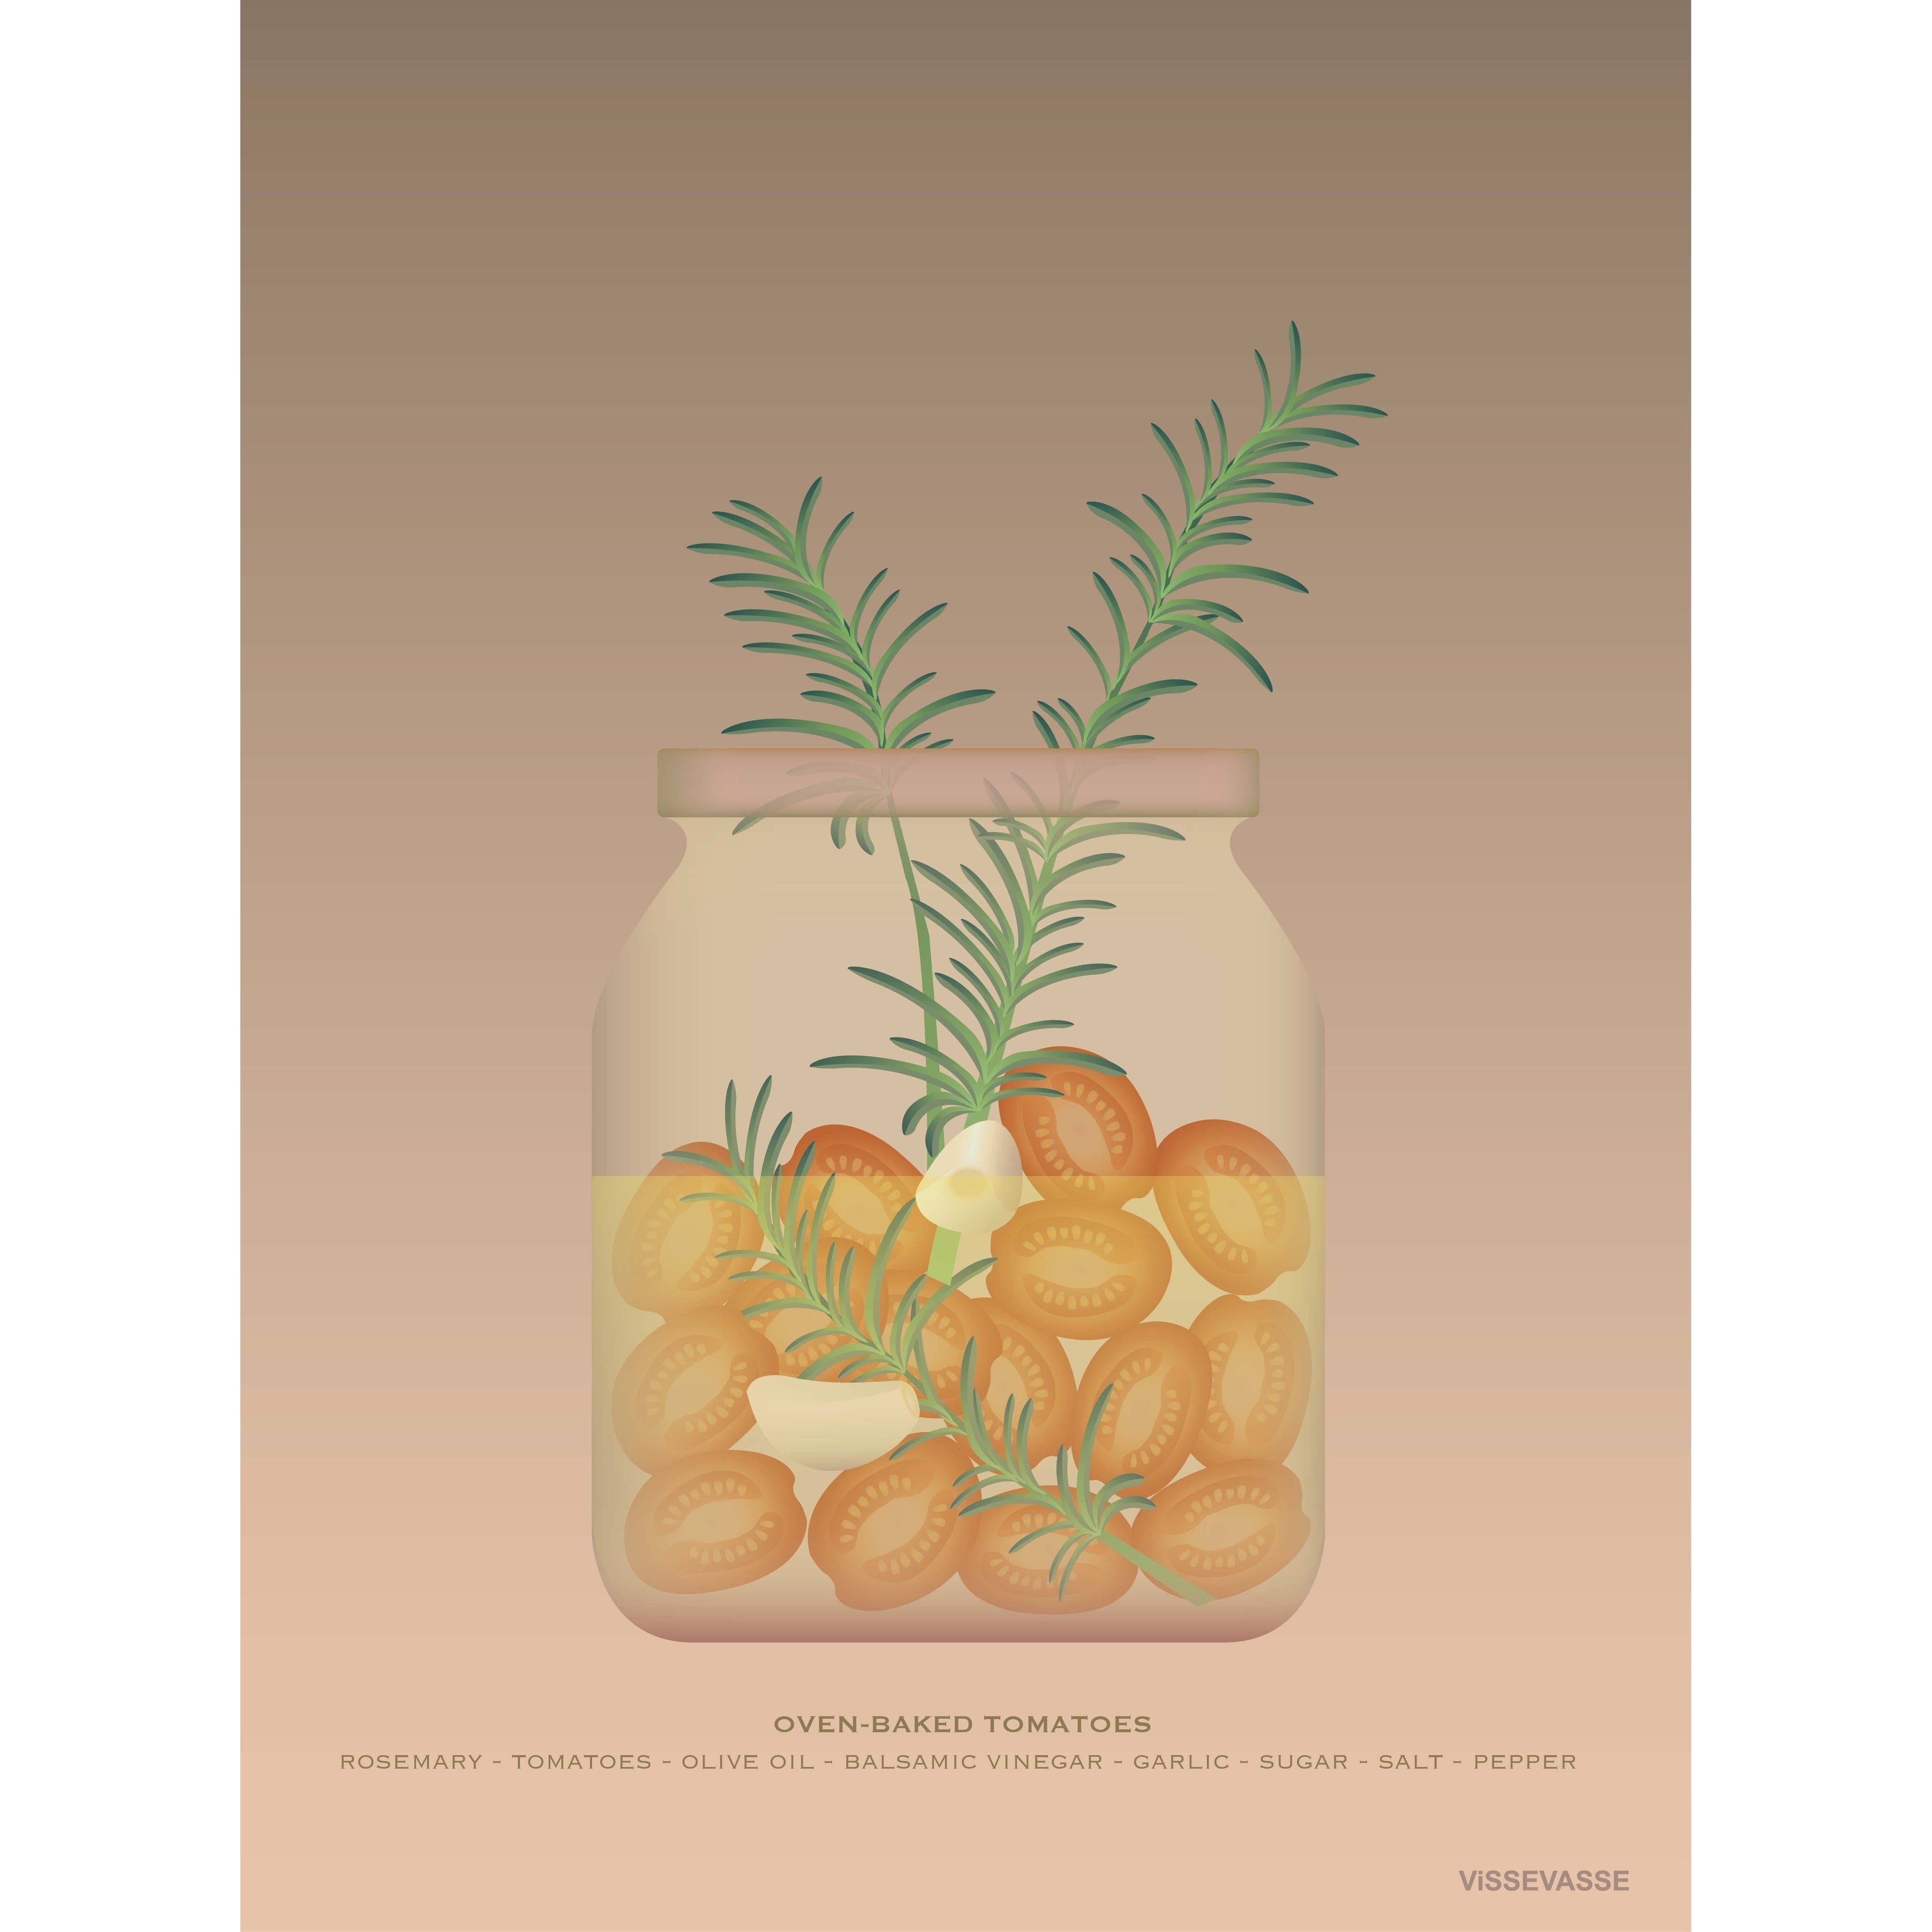 Vissevasse Ovn Baked Tomatoes Poster, 15 x21 cm